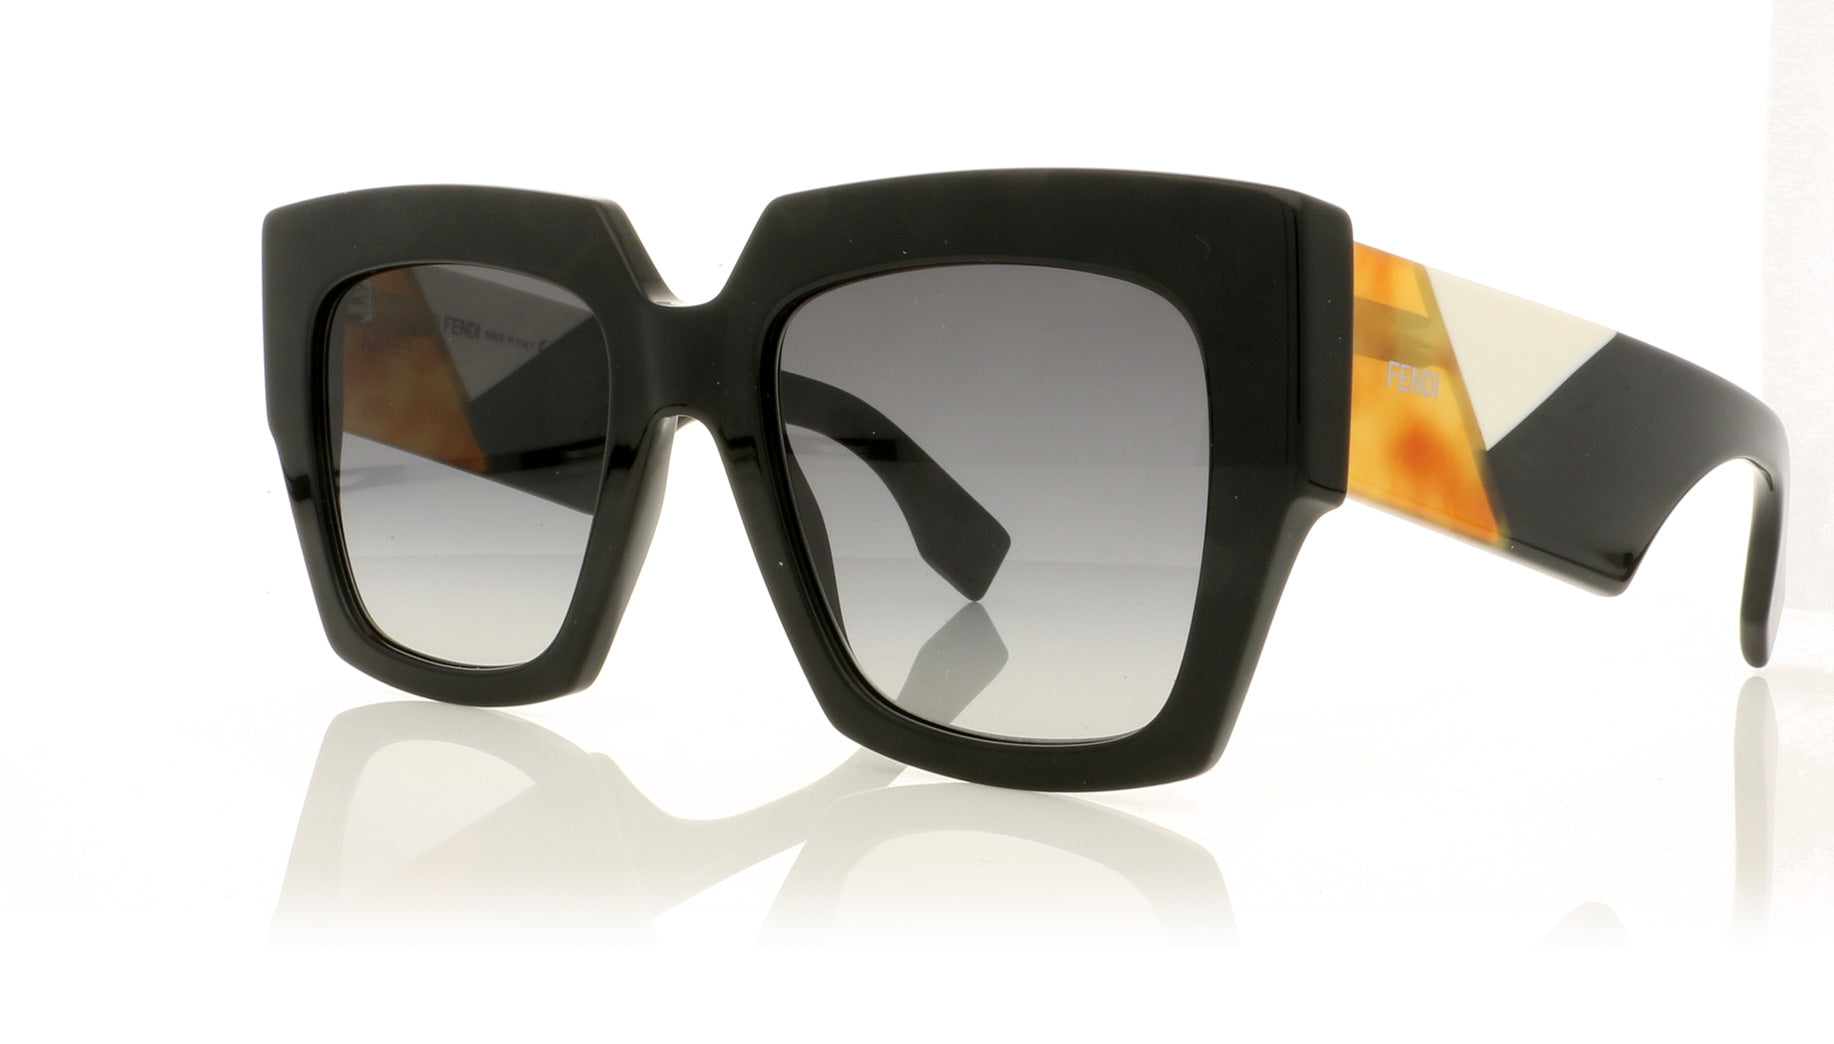 fendi ff 0263 sunglasses